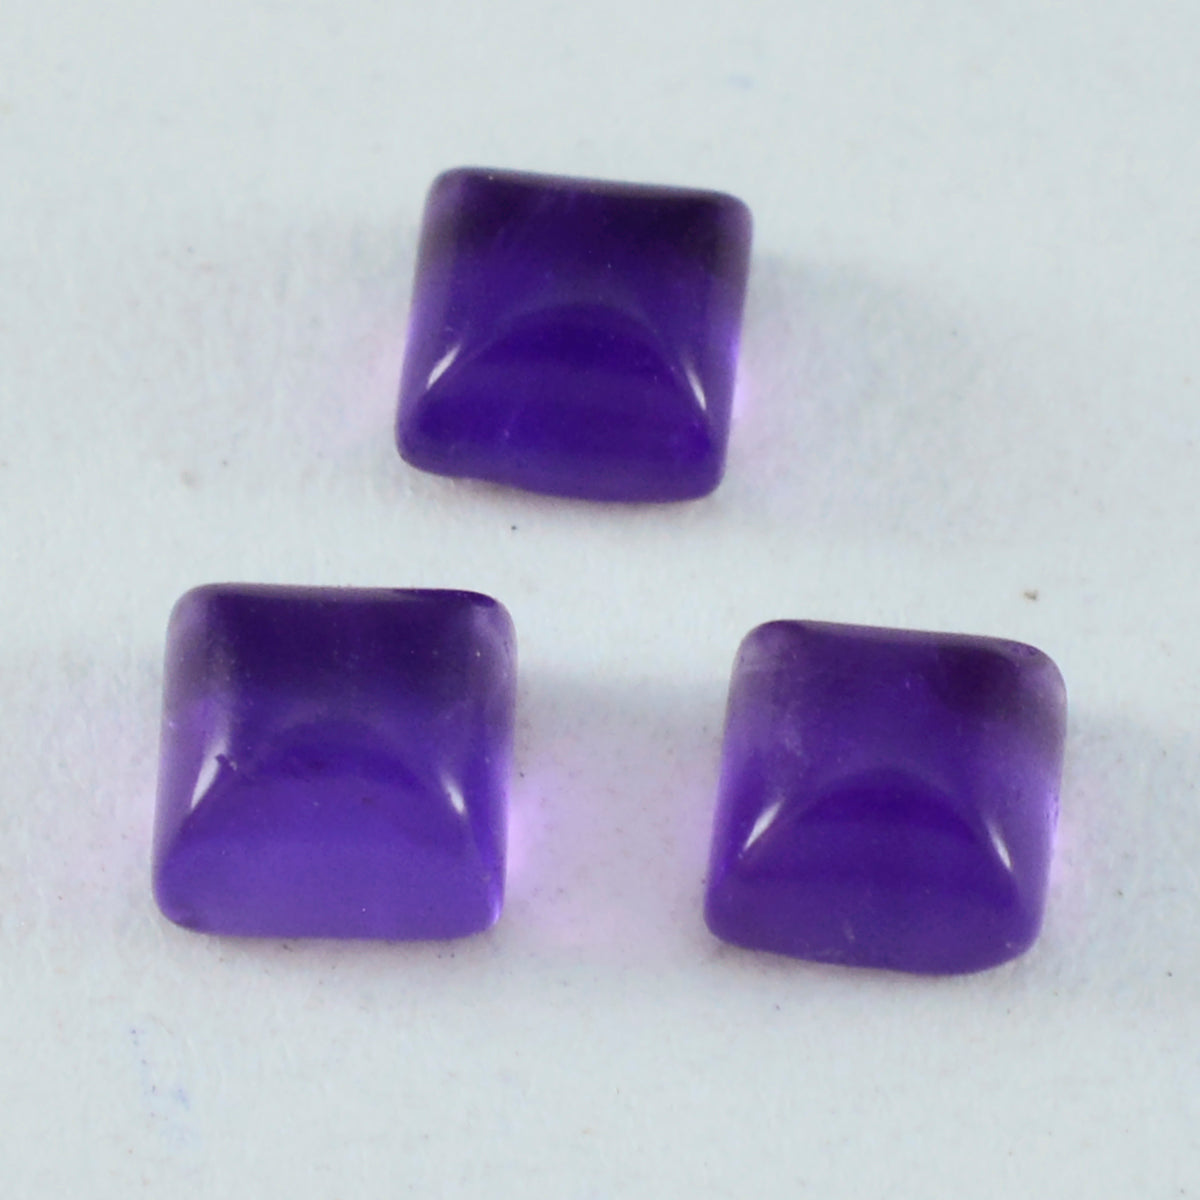 riyogems 1 шт. фиолетовый аметист кабошон 8x8 мм квадратной формы, довольно качественный драгоценный камень